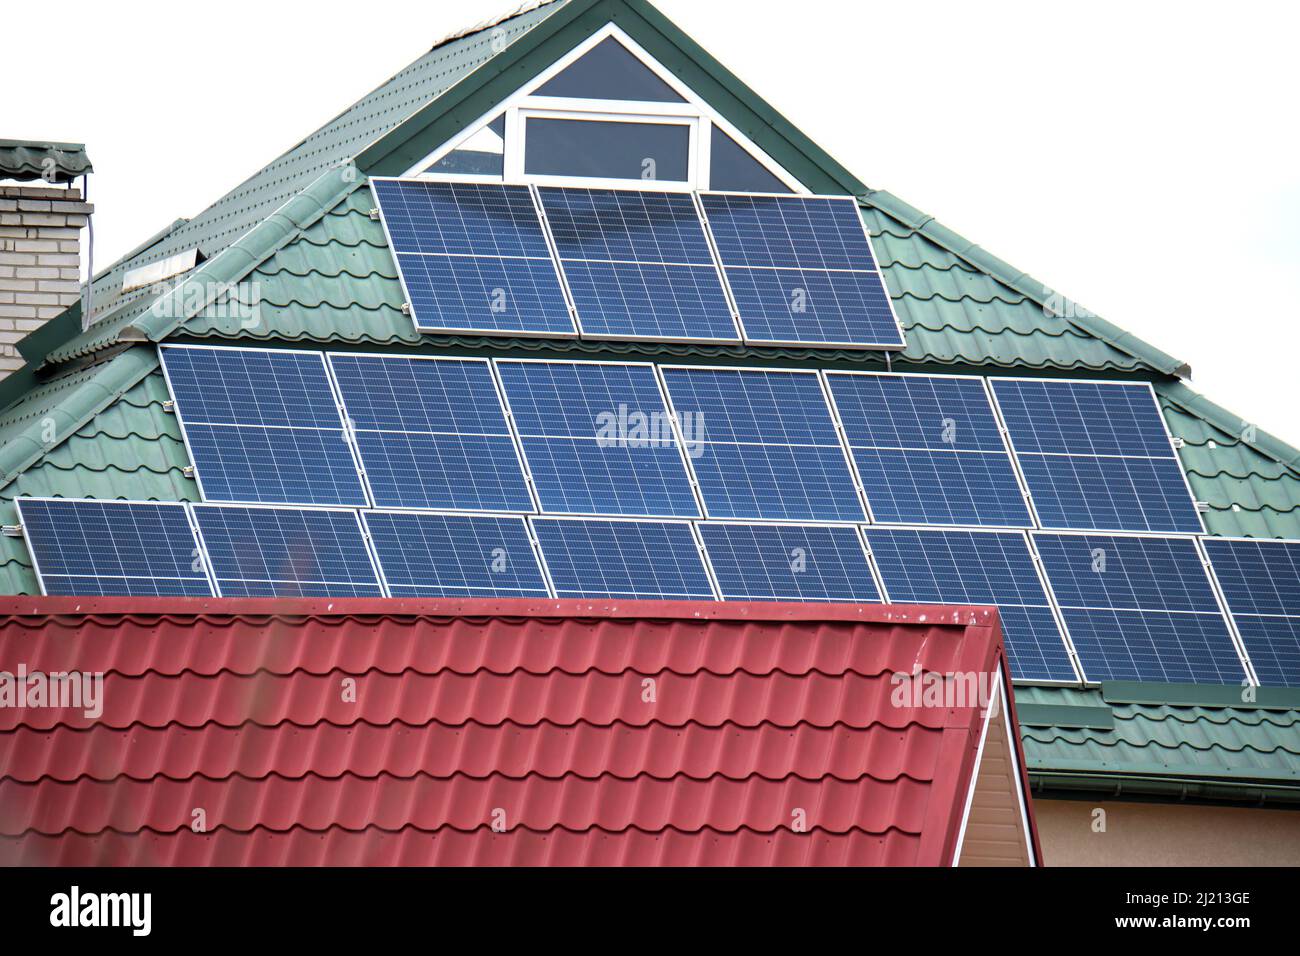 Casa residencial con techo cubierto con paneles solares fotovoltaicos para  la producción de energía eléctrica ecológica limpia en el área rural  suburbana. Conc Fotografía de stock - Alamy